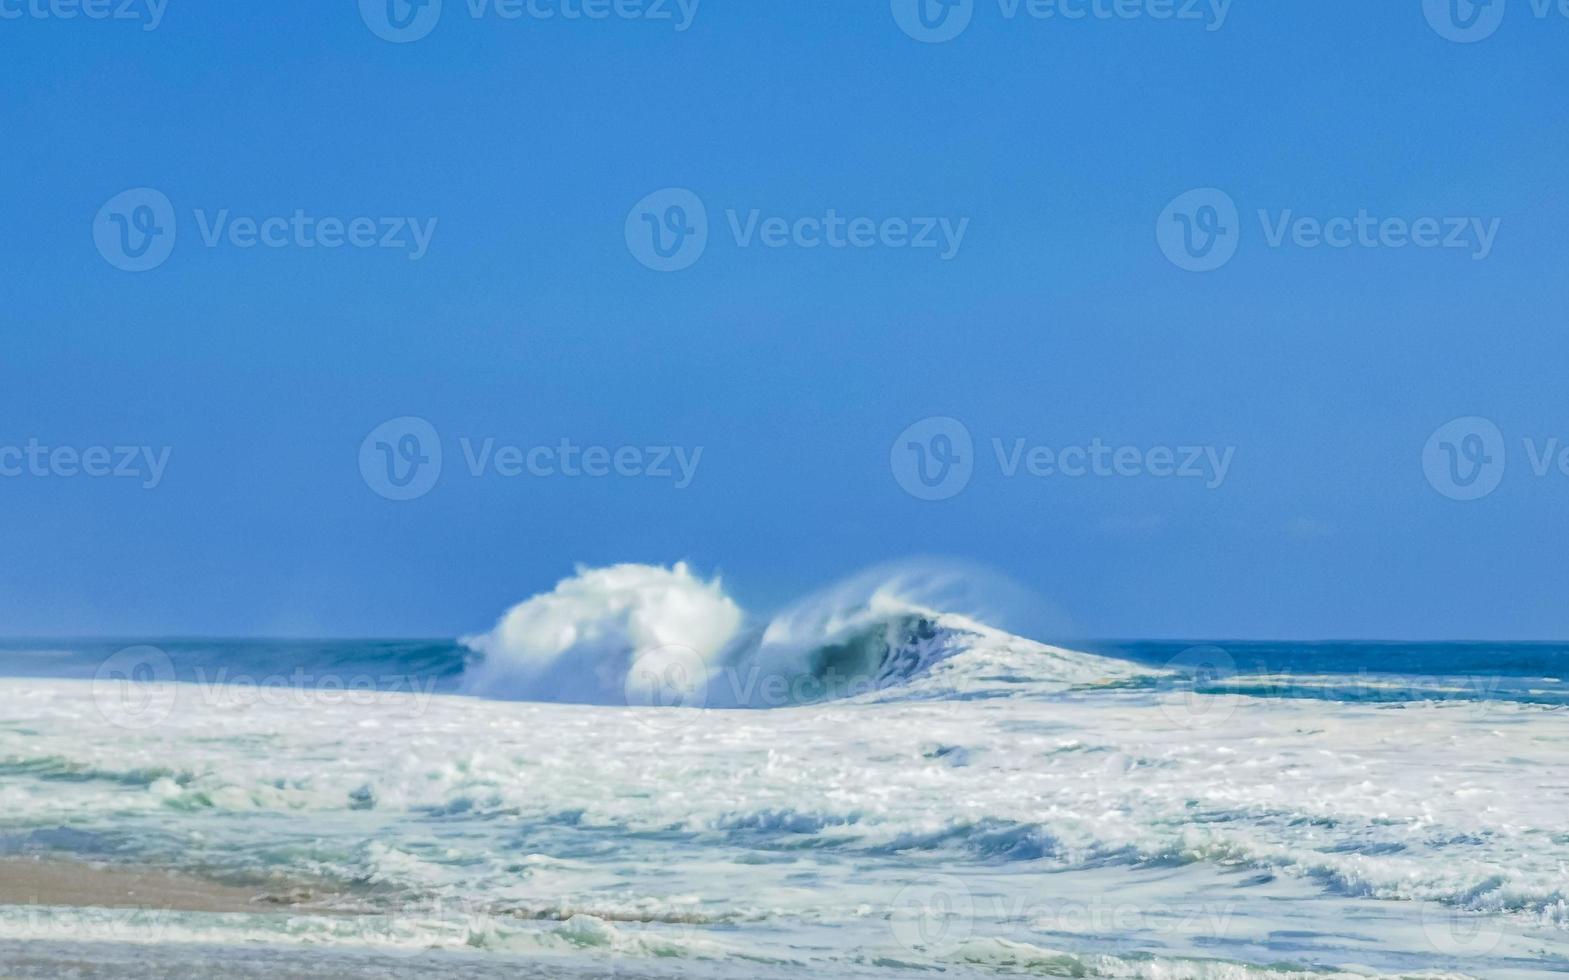 extremamente grandes ondas de surfista na praia puerto escondido méxico. foto